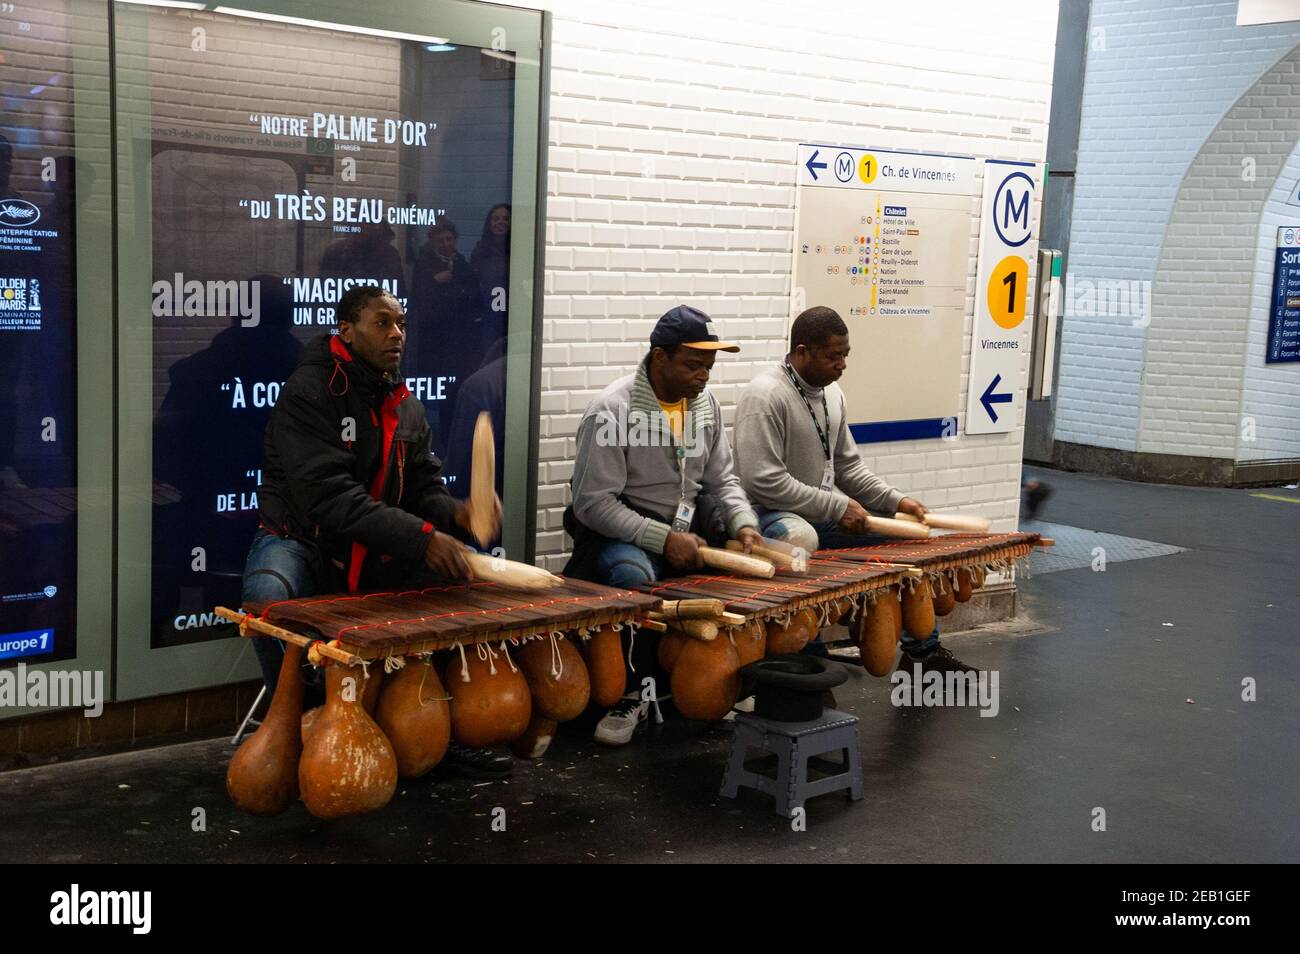 PARIGI, FRANCIA - 14 GENNAIO 2018: I musicisti di strada suonano il balafon (tipo di xilofono con i calabash gourds originati in Mali) alla metropolitana parigina. Foto Stock